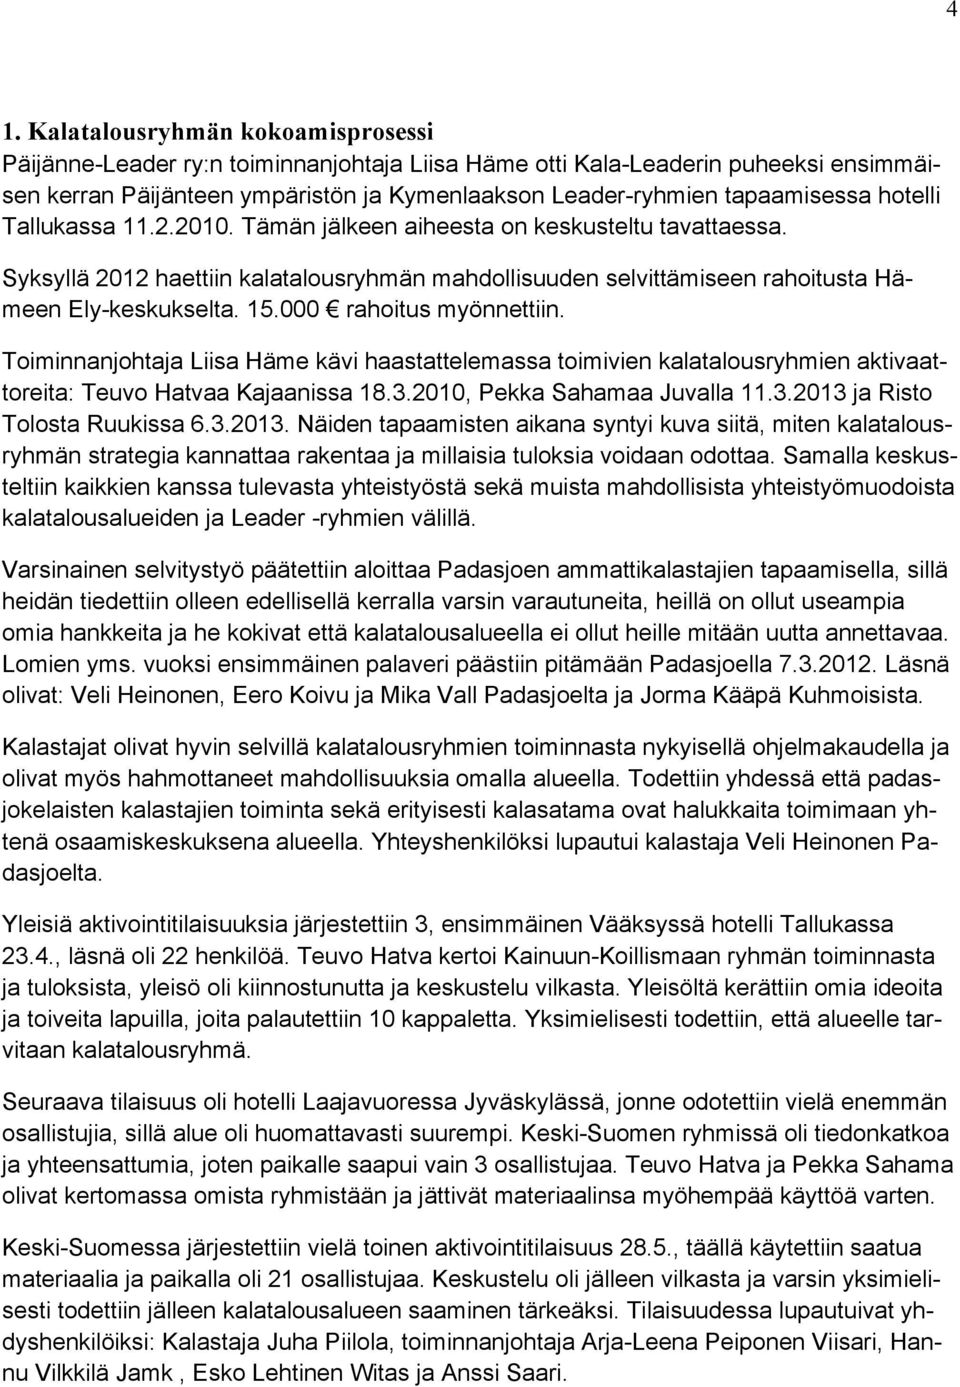 15.000 rahoitus myönnettiin. Toiminnanjohtaja Liisa Häme kävi haastattelemassa toimivien kalatalousryhmien aktivaattoreita: Teuvo Hatvaa Kajaanissa 18.3.2010, Pekka Sahamaa Juvalla 11.3.2013 ja Risto Tolosta Ruukissa 6.